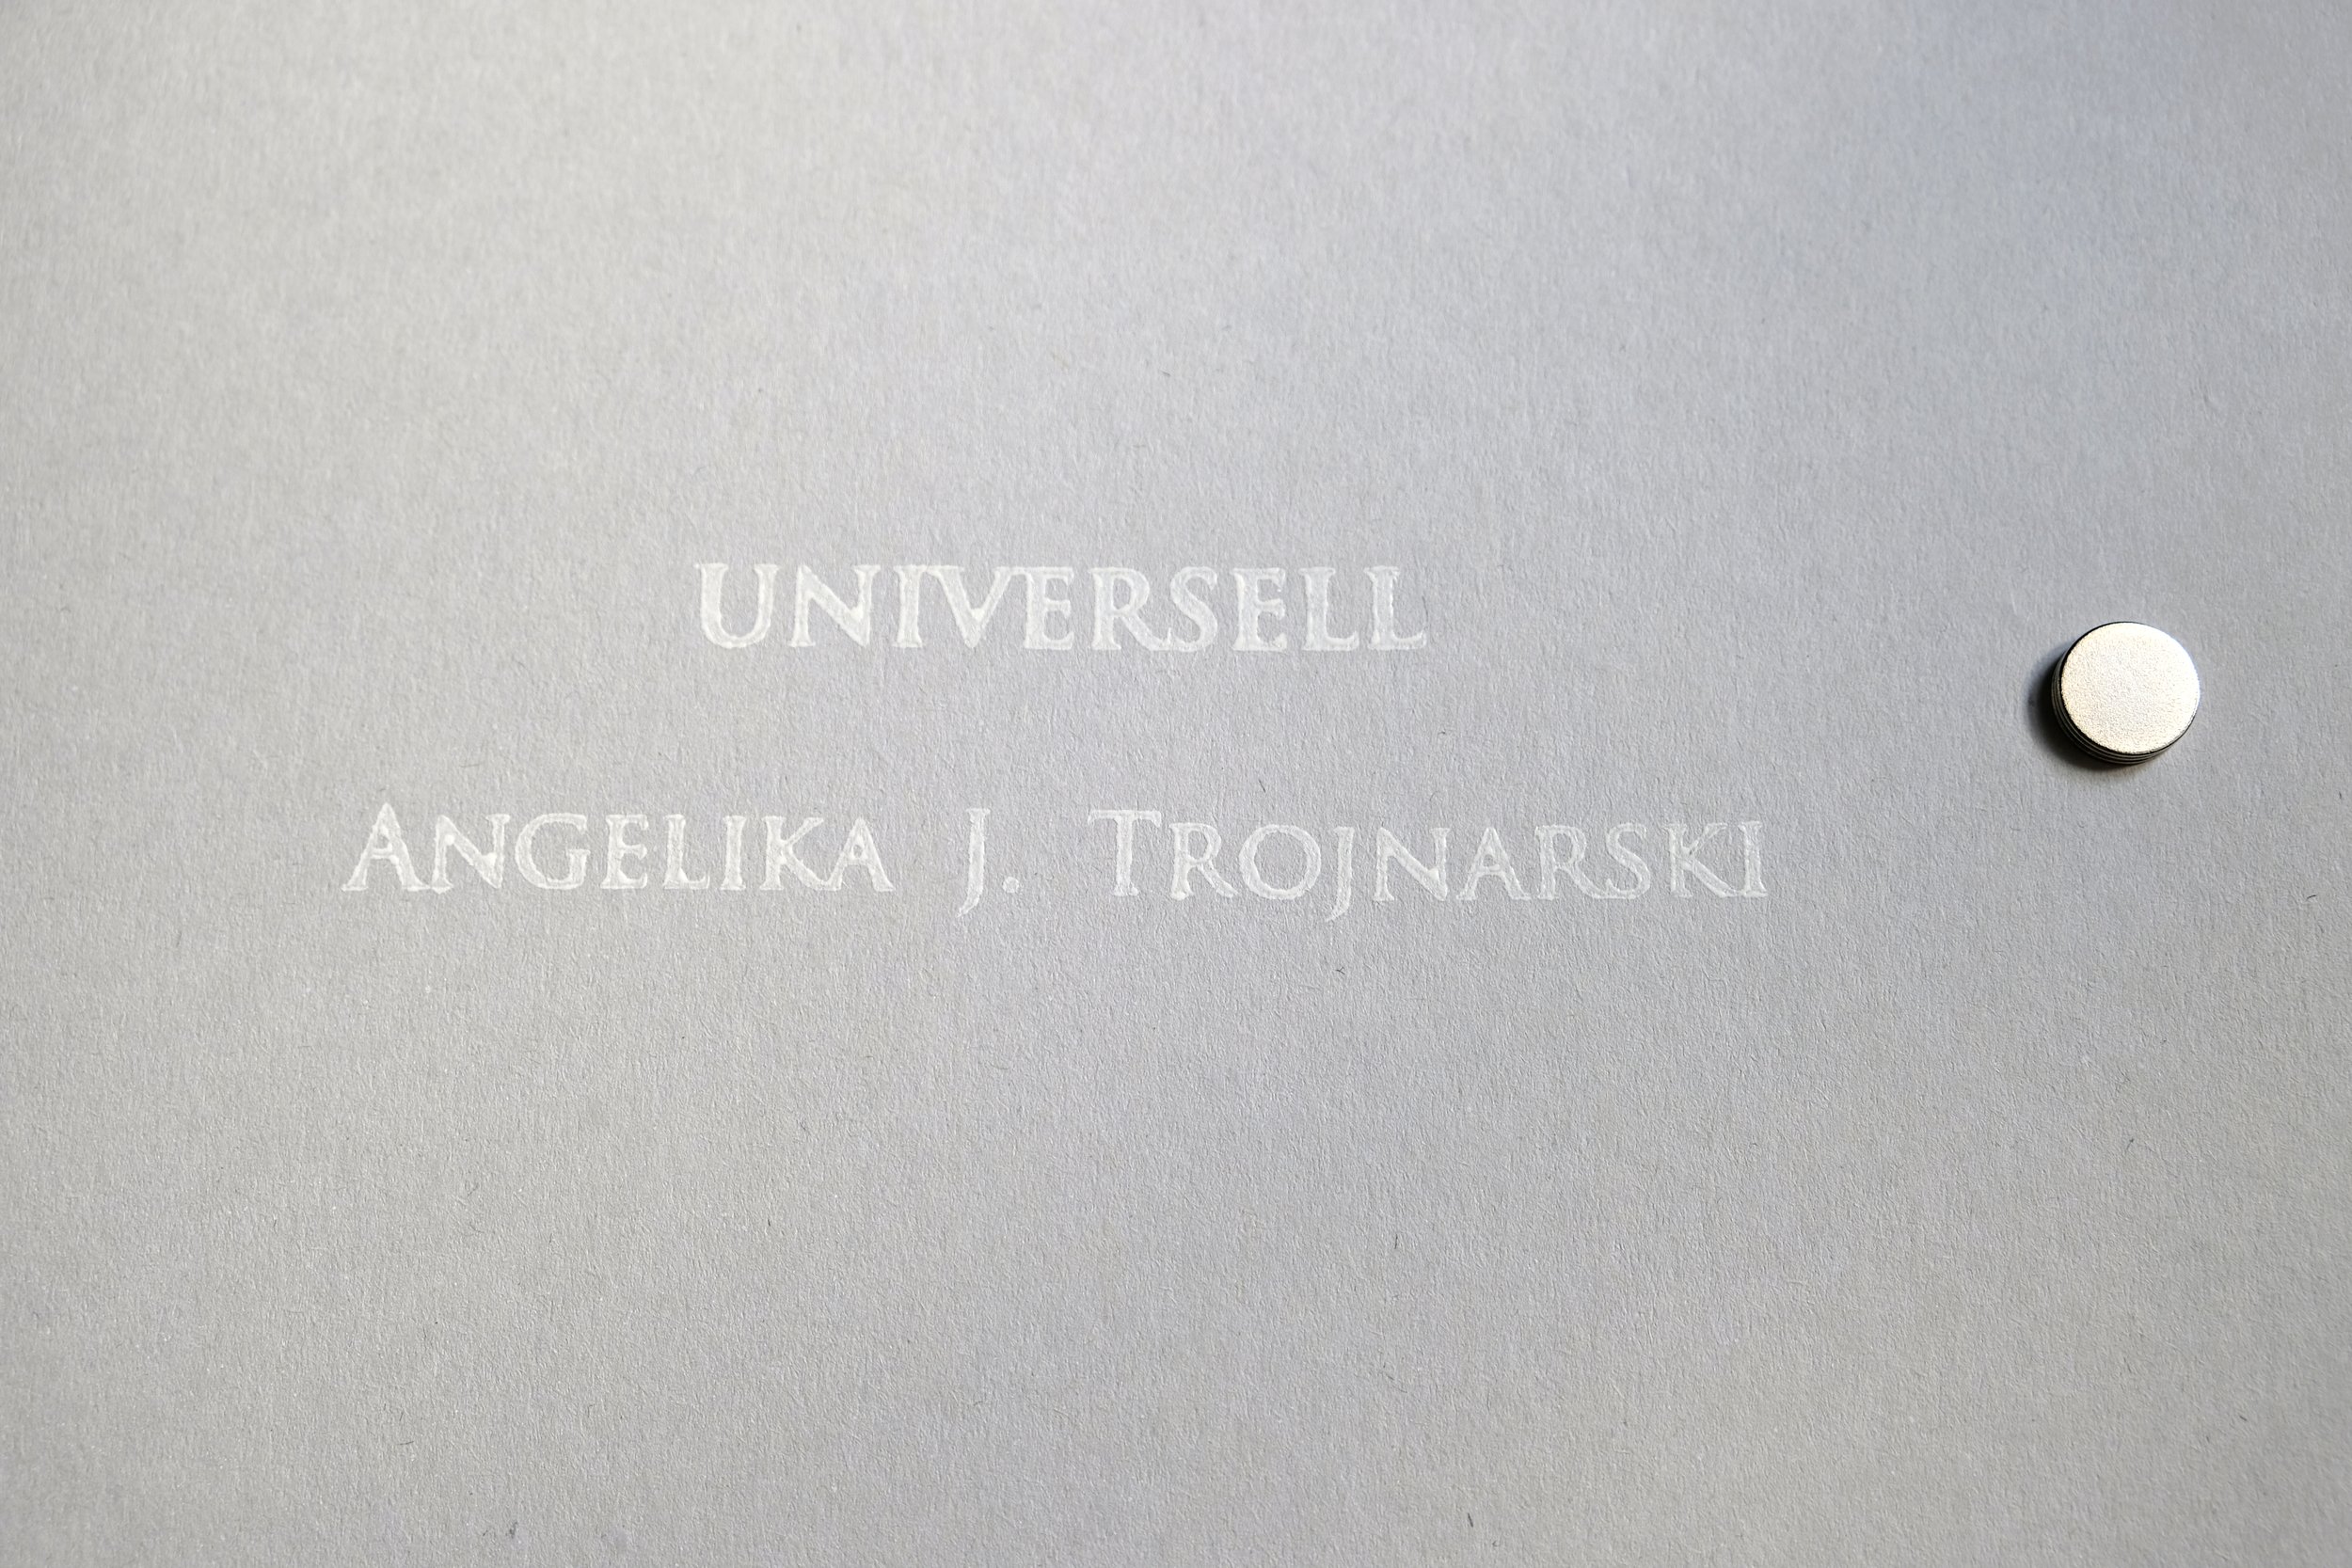 Kunstbar-Angelika-Trojnarski-Shopartikel-DSF0837.JPG